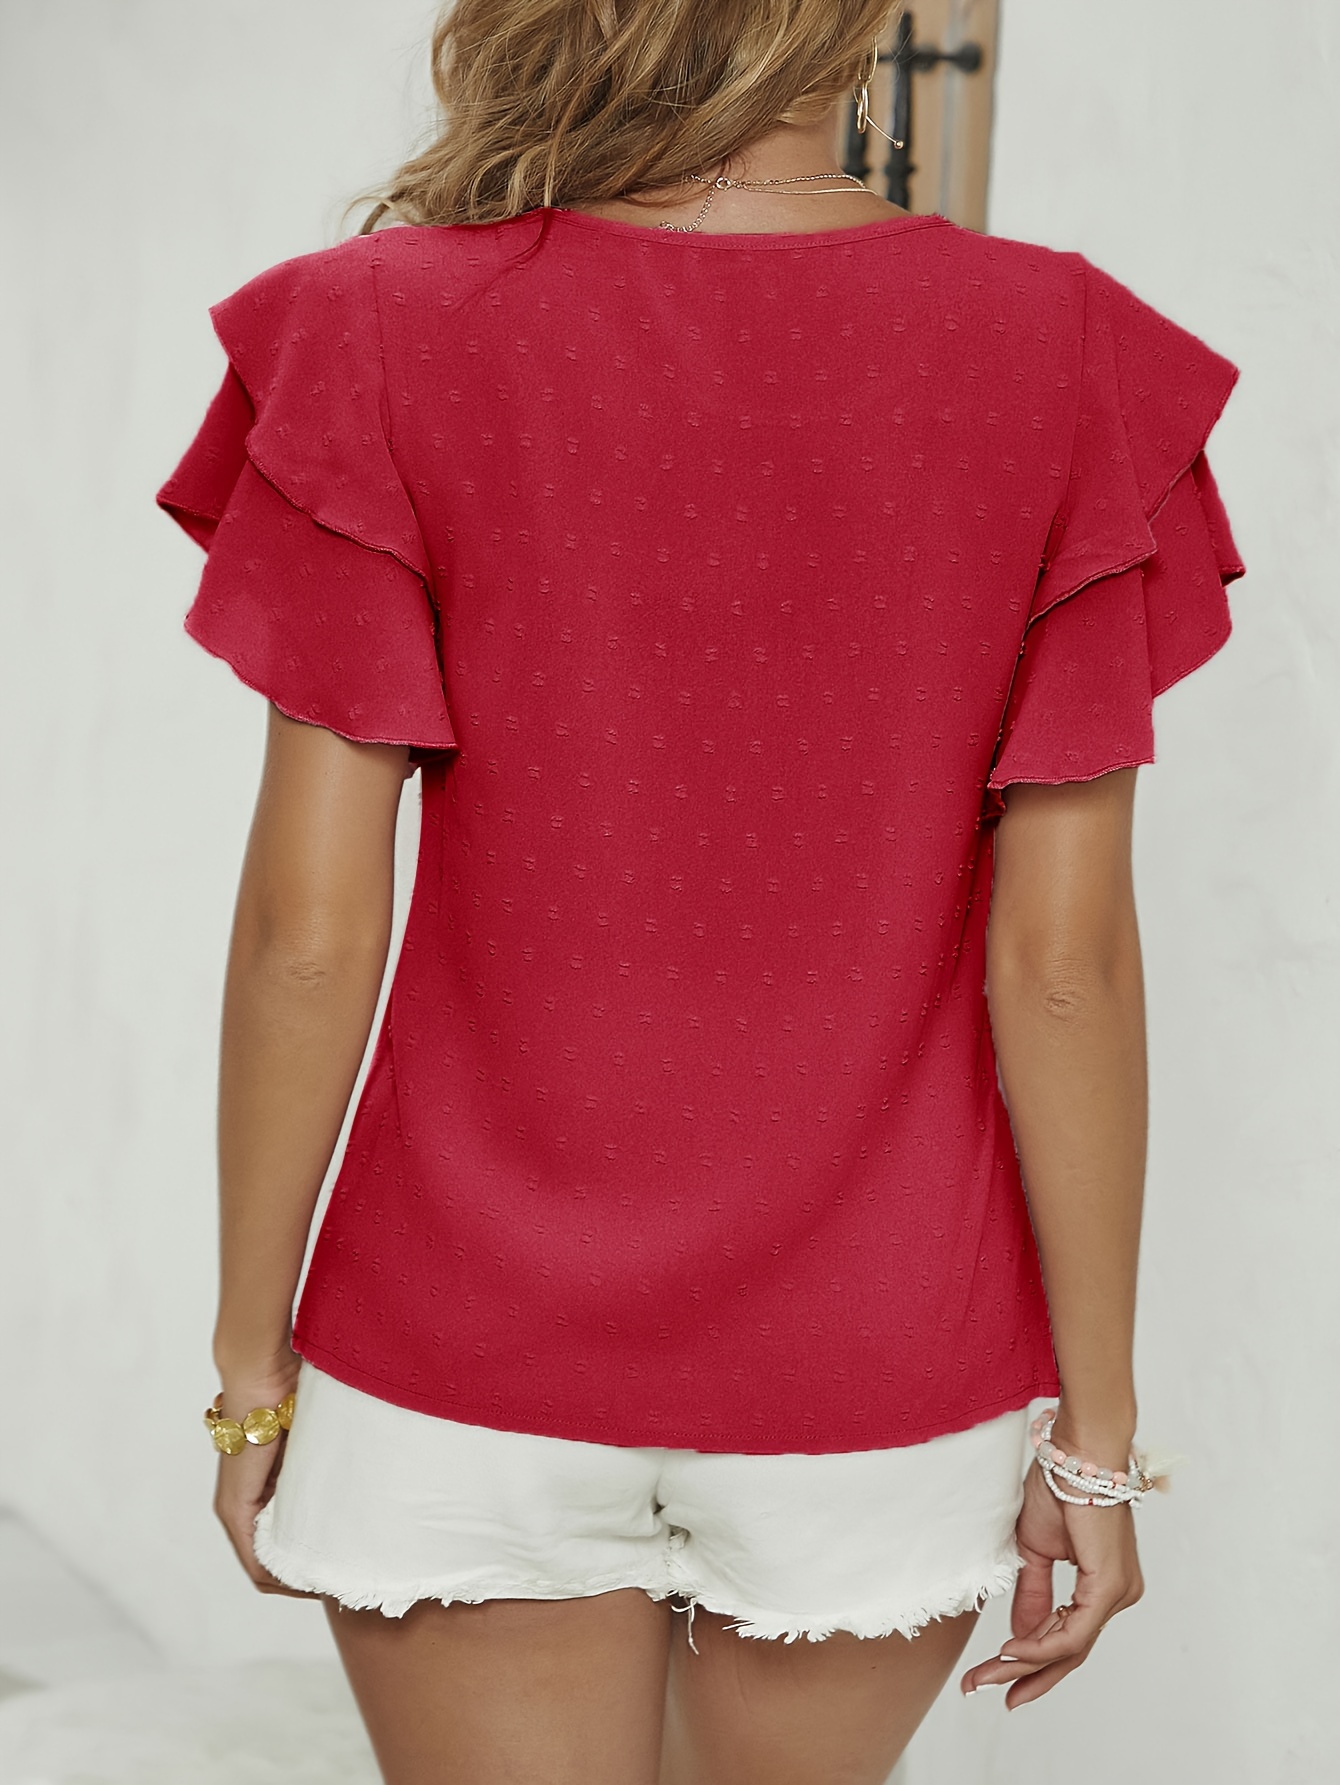 Solide Swiss Dot-Bluse Mit Rundhalsausschnitt, Elegante - Lagenärmeln, Temu Mit Germany Bluse Damenbekleidung